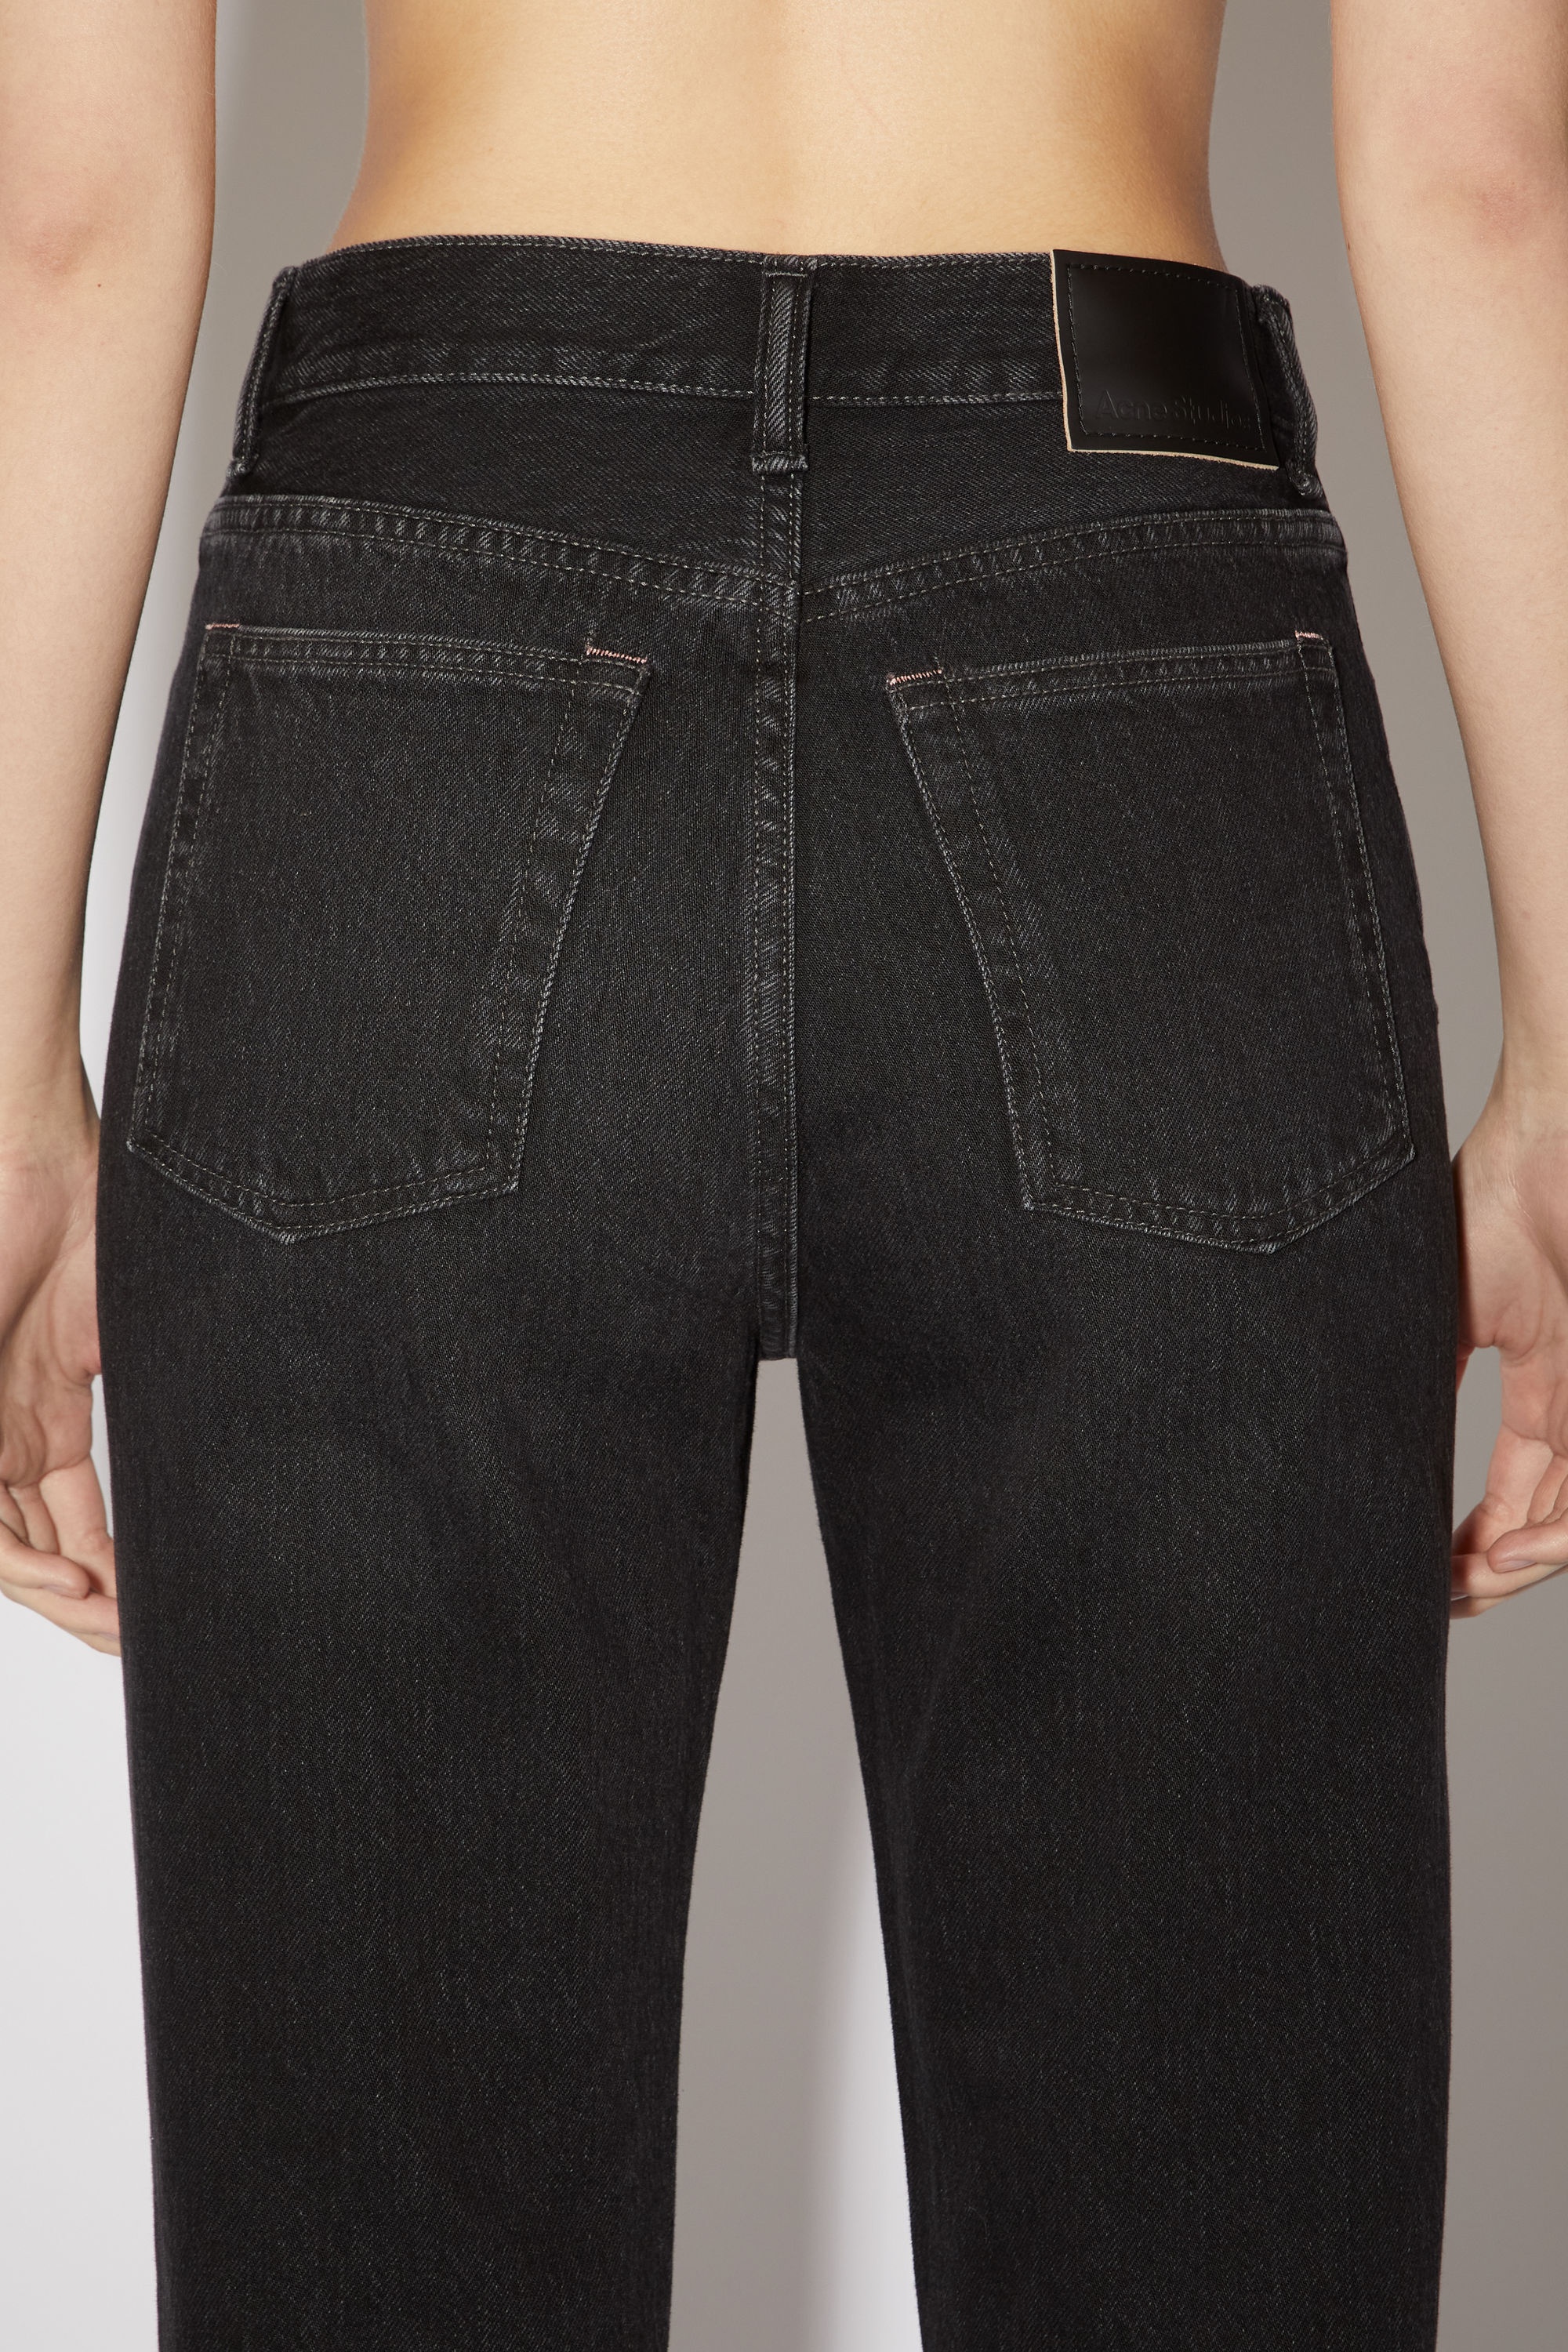 Regular fit jeans - Mece - Black - 6